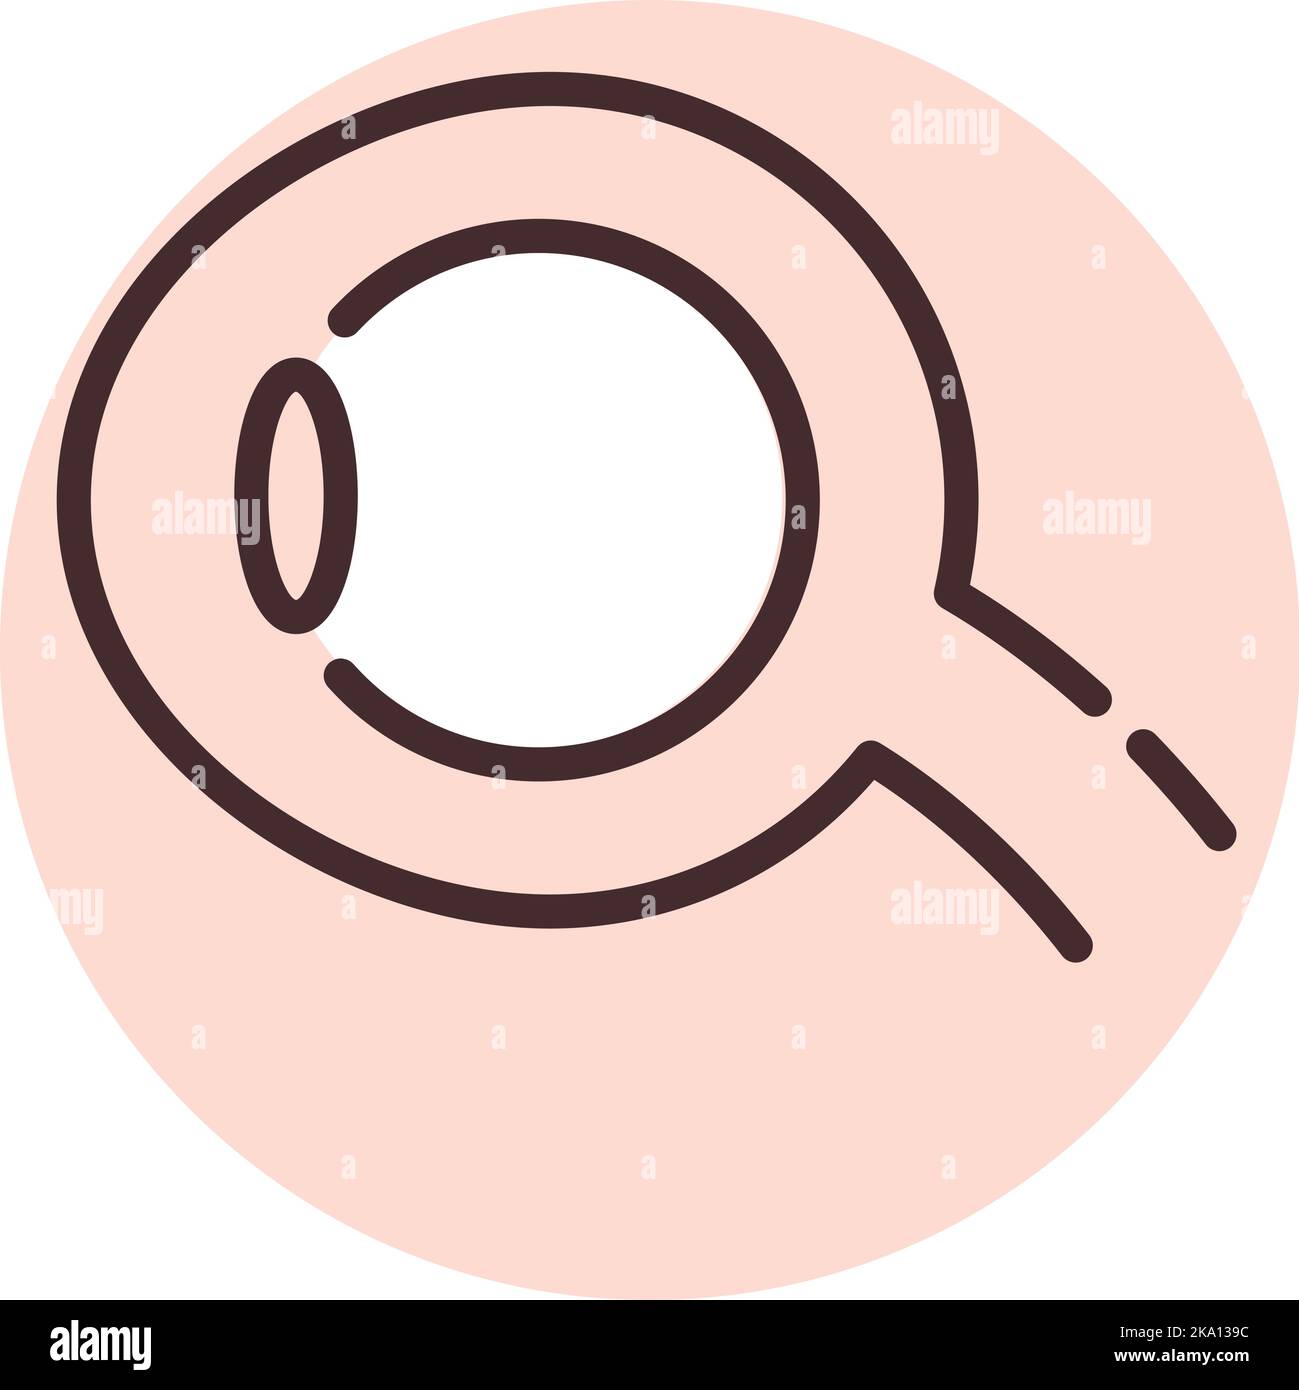 Prothese Auge, Illustration oder Symbol, Vektor auf weißem Hintergrund. Stock Vektor